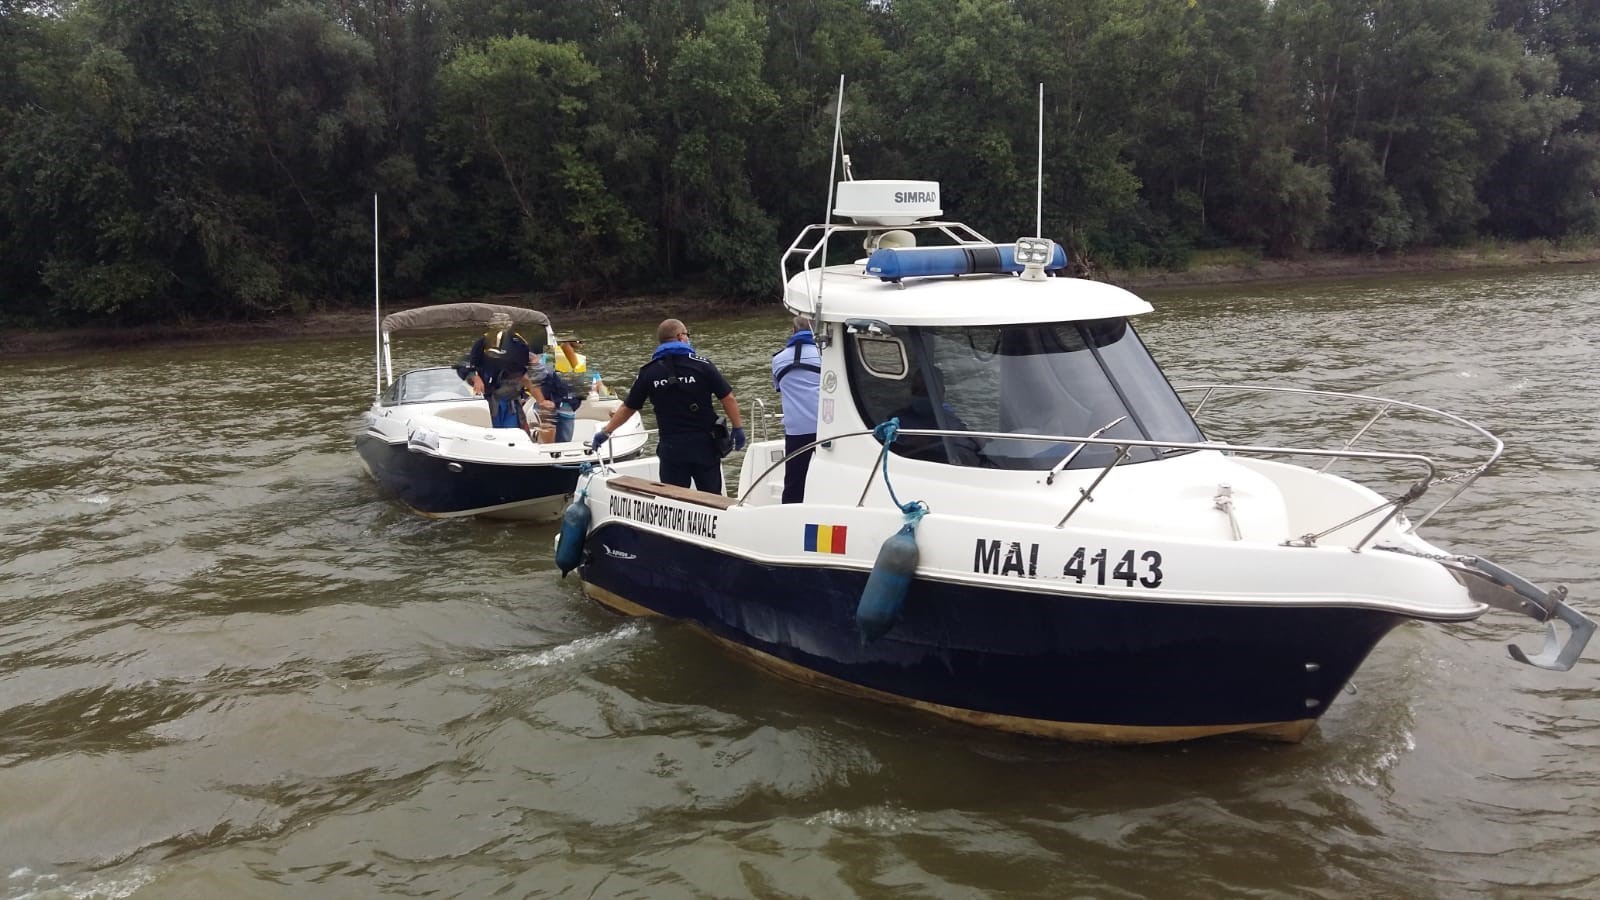 Dosare penale întocmite de Poliția Transporturi pentru două nave sub pavilion românesc. Vezi din ce motive